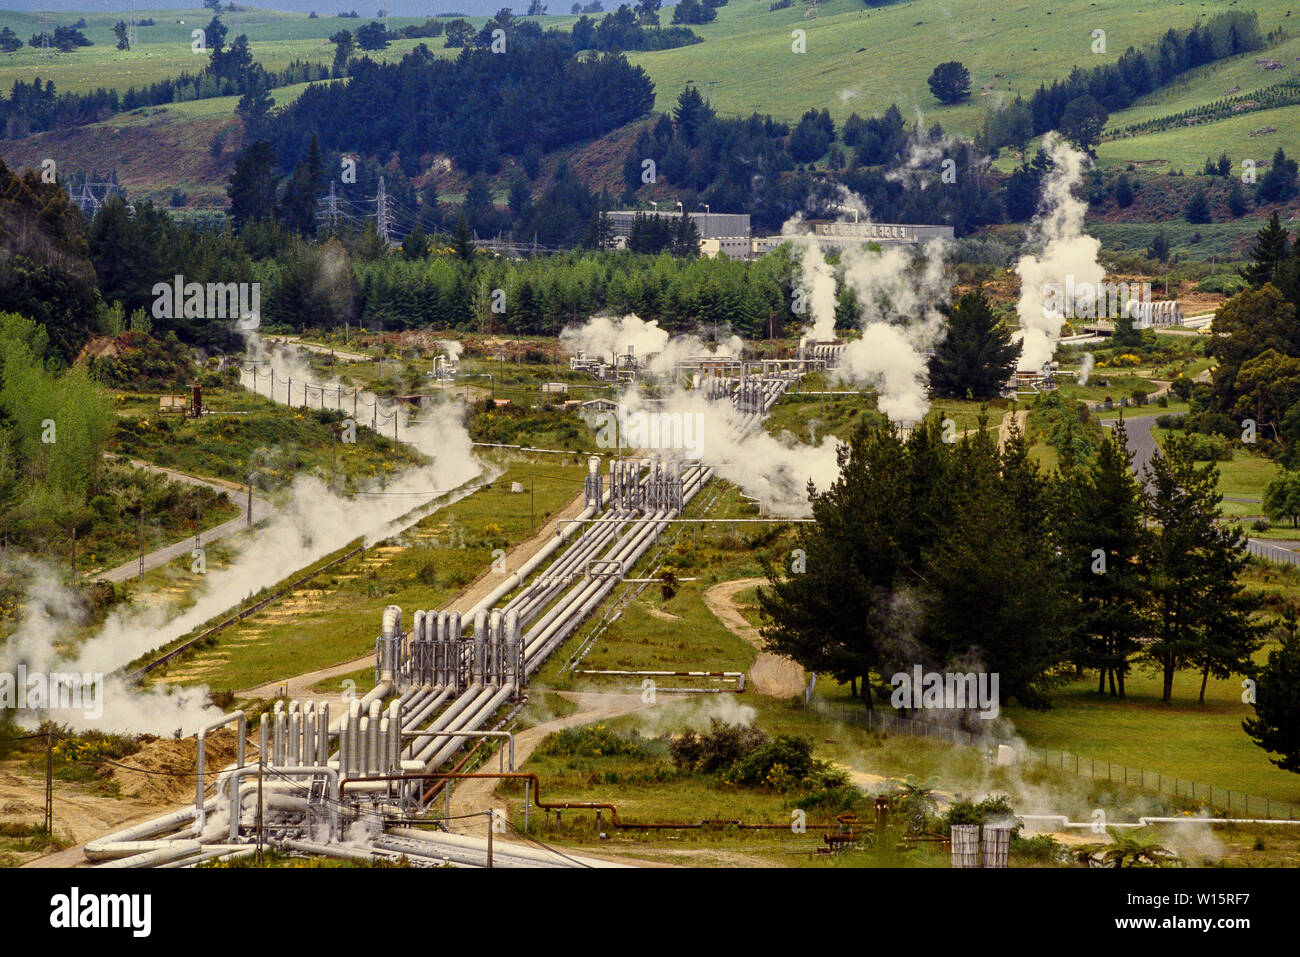 Neuseeland, Nordinsel. Das wairakei Power Station ist ein geothermisches Kraftwerk in der Nähe der Wairakei geothermische Feld in Neuseeland. Wairakei liegt i Stockfoto